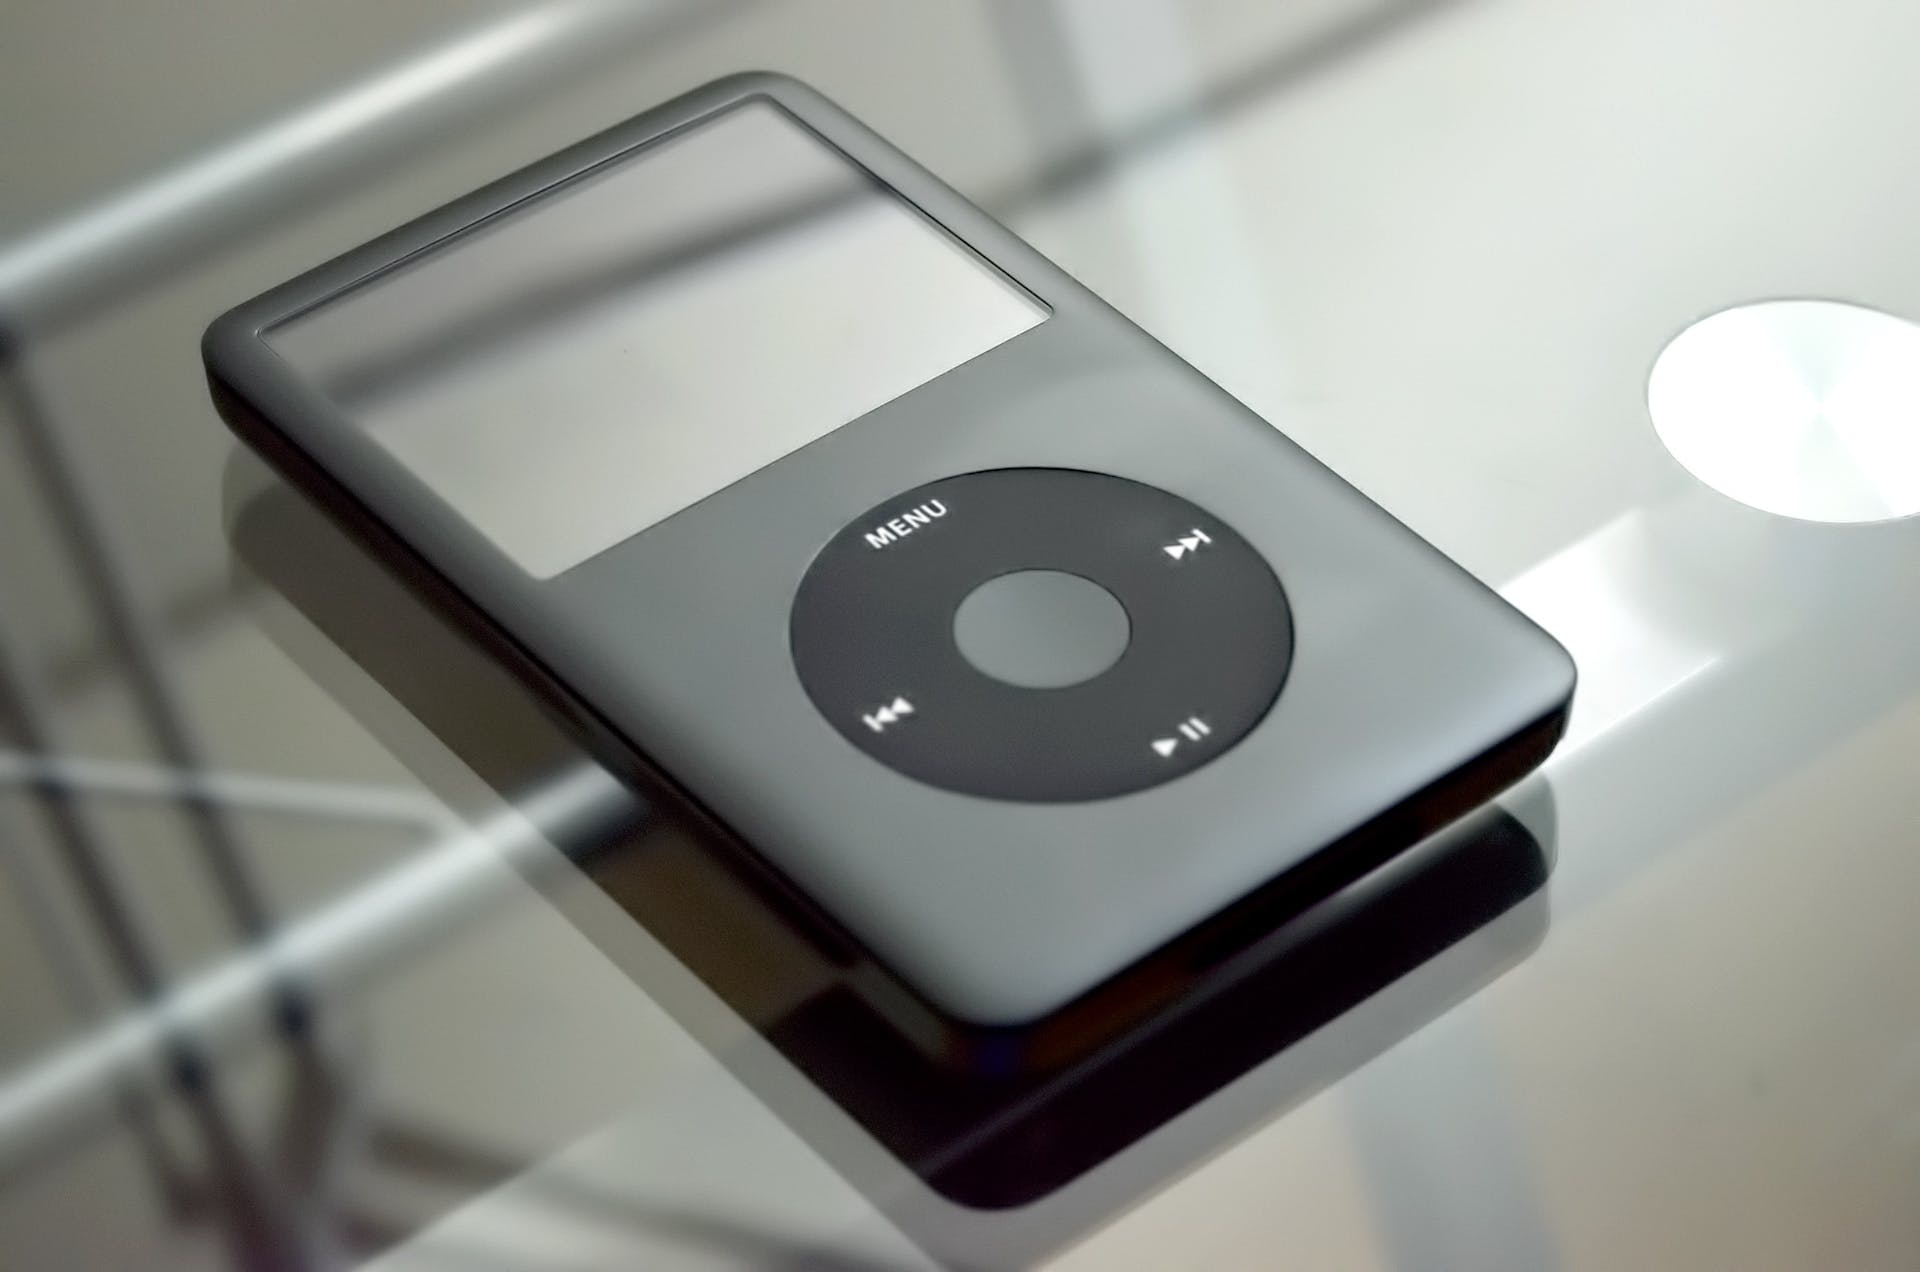 A grey iPod | Source: Pexels